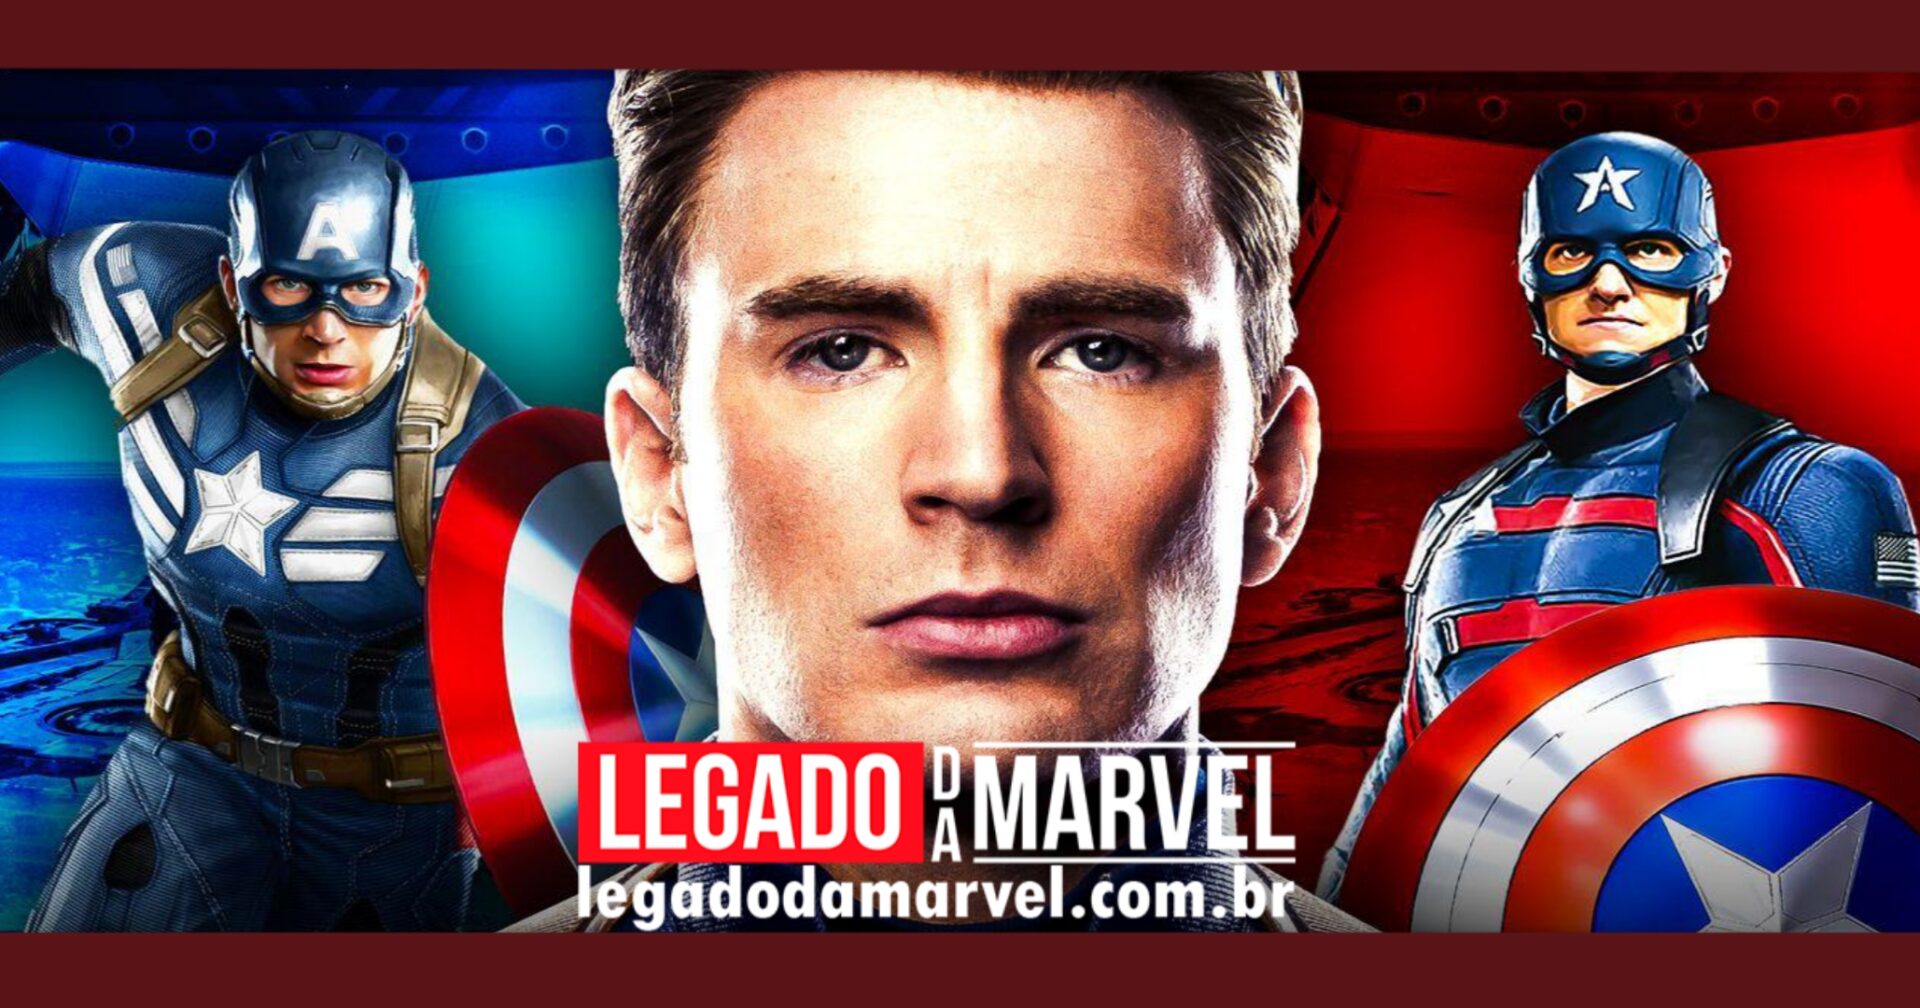  Chris Evans revela estar disposto a retornar como Capitão América na Marvel